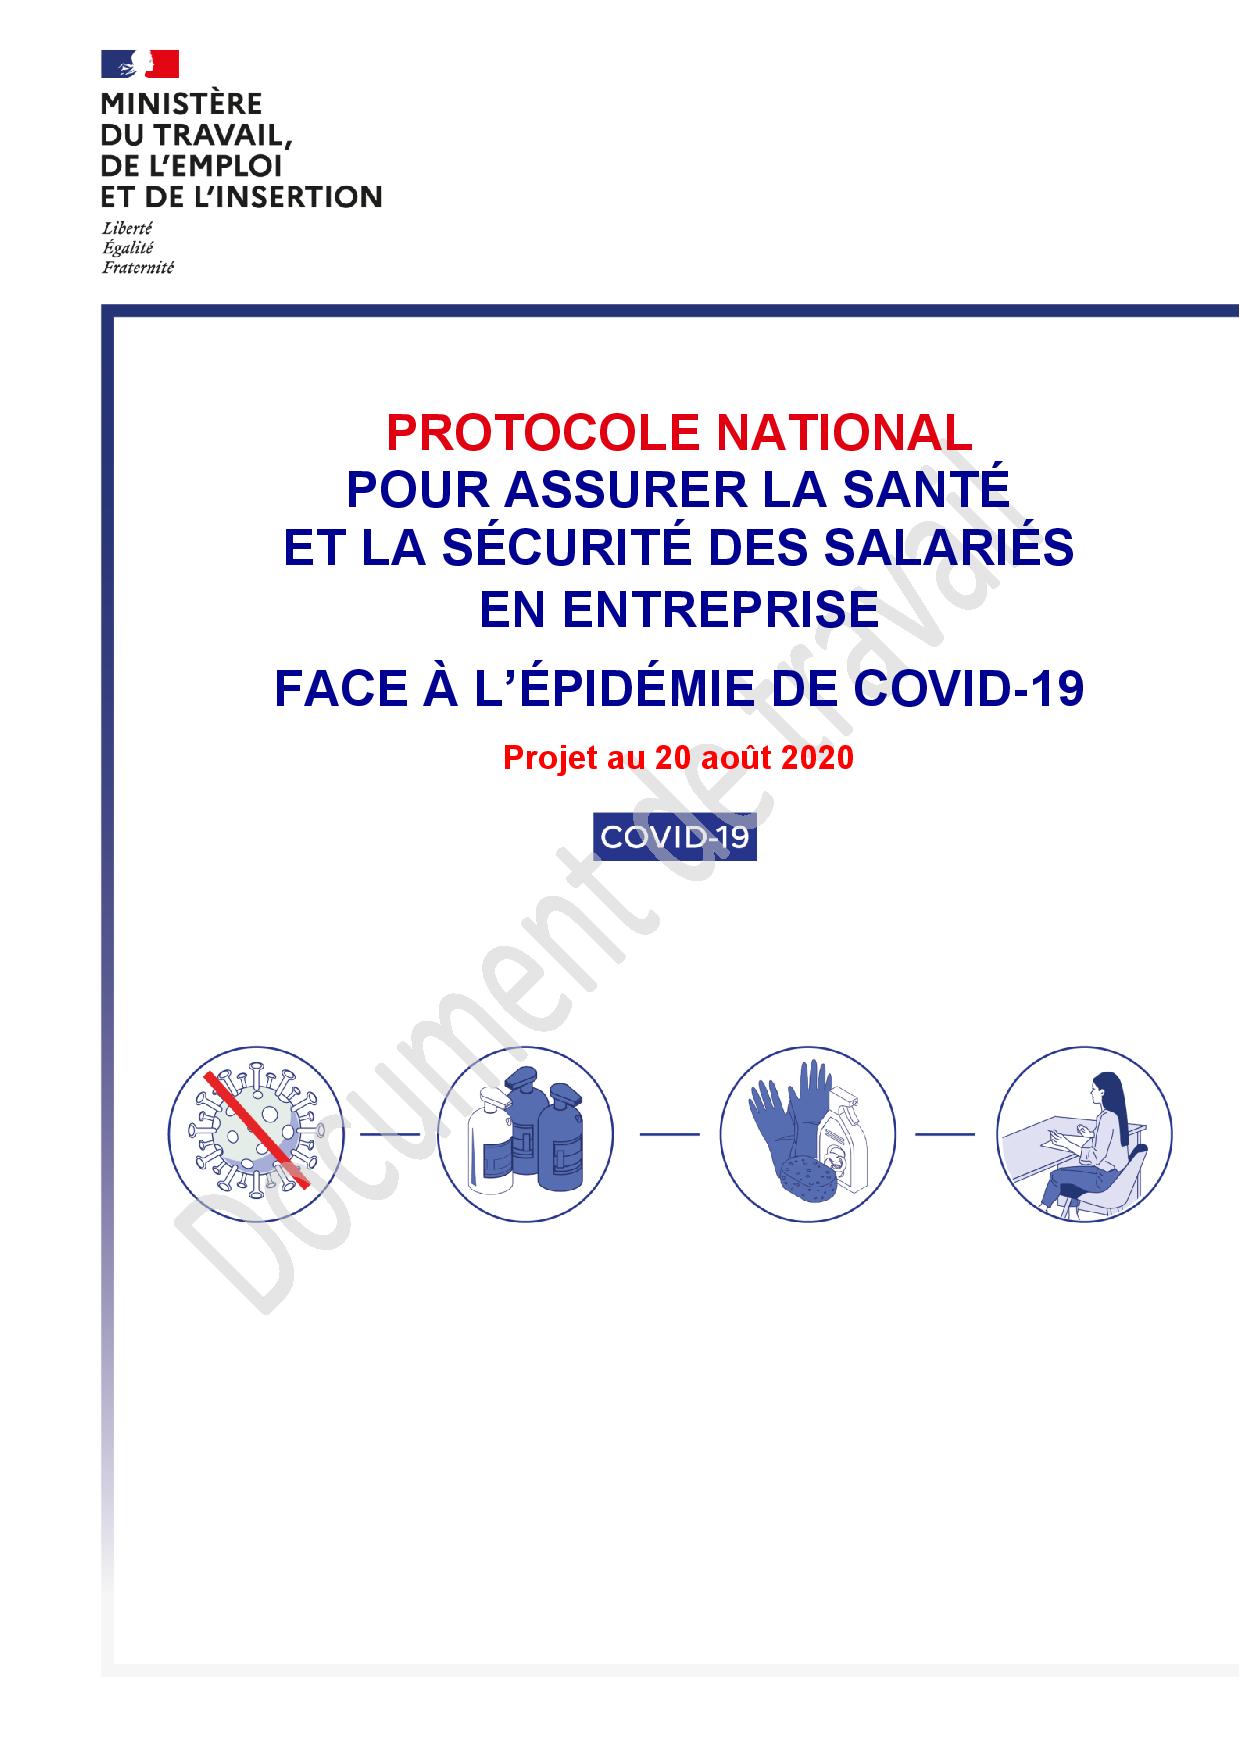 Projet de nouveau protocole national pour assurer la santé et la sécurité des salariés en entreprise face à l’épidémie de Covid-19